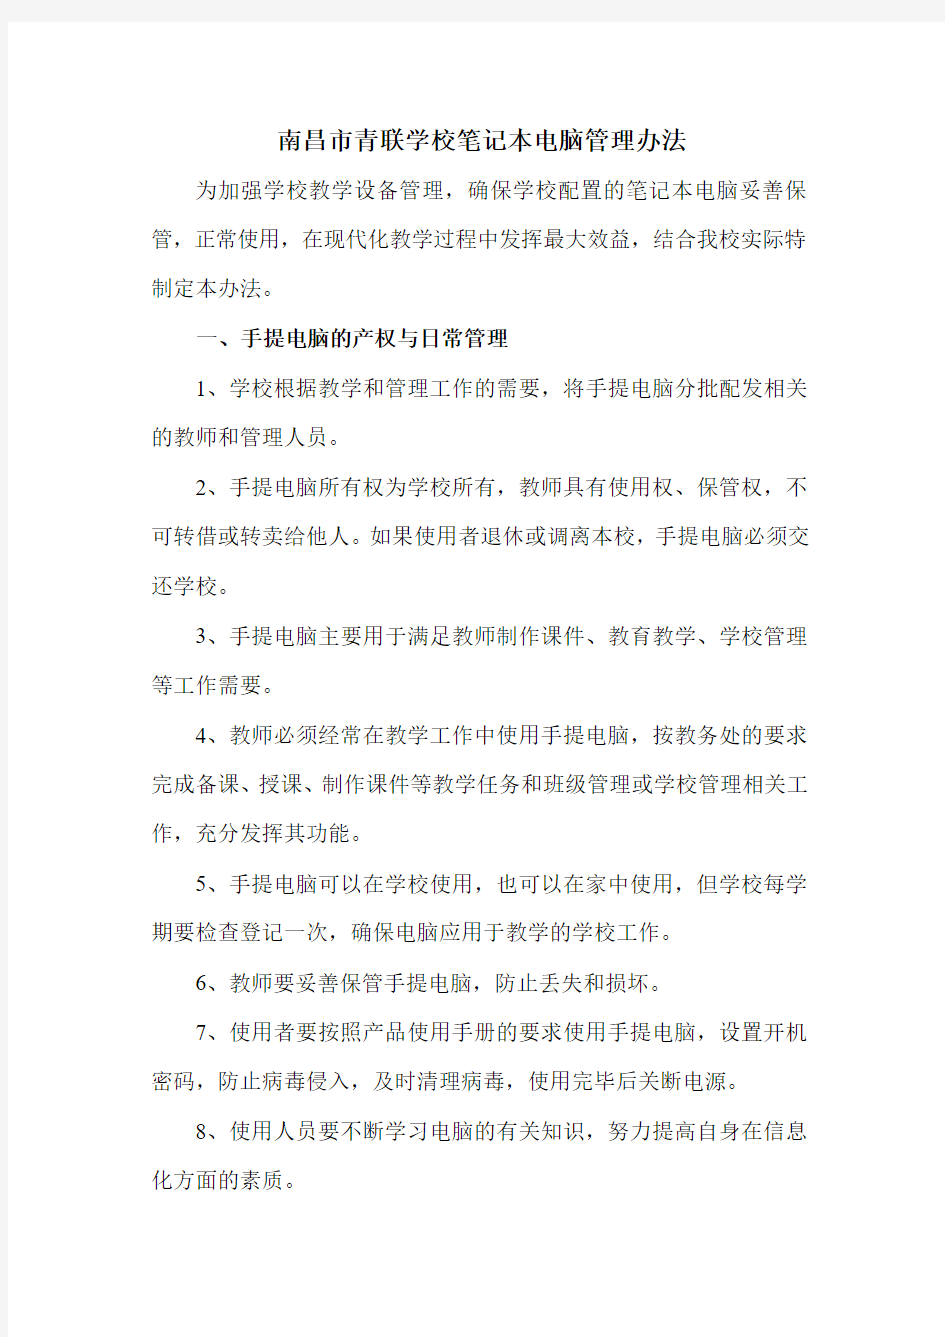 南昌市青联学校笔记本电脑管理办法2013.11